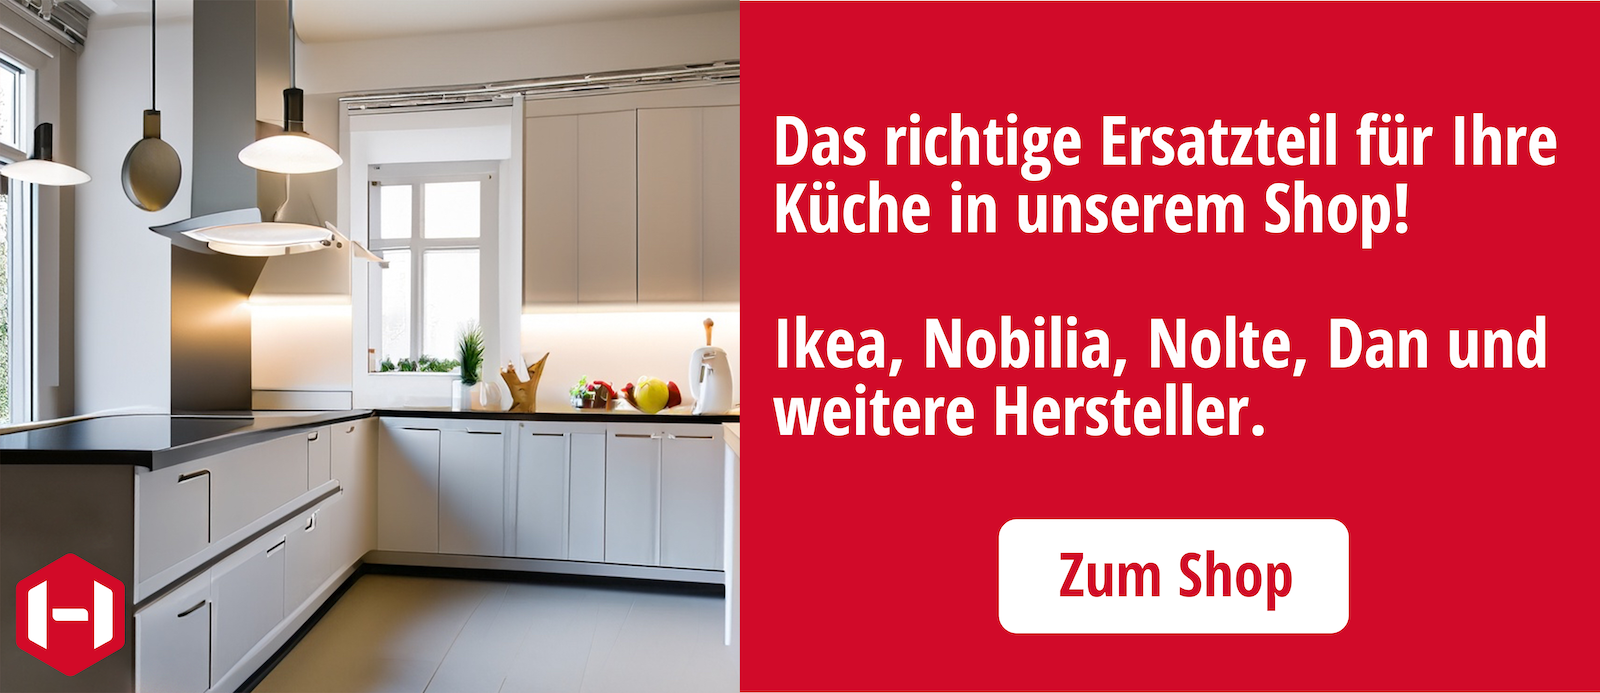 Küchen, Nobilia, Nolte für und Ersatzteile IKEA Original DAN